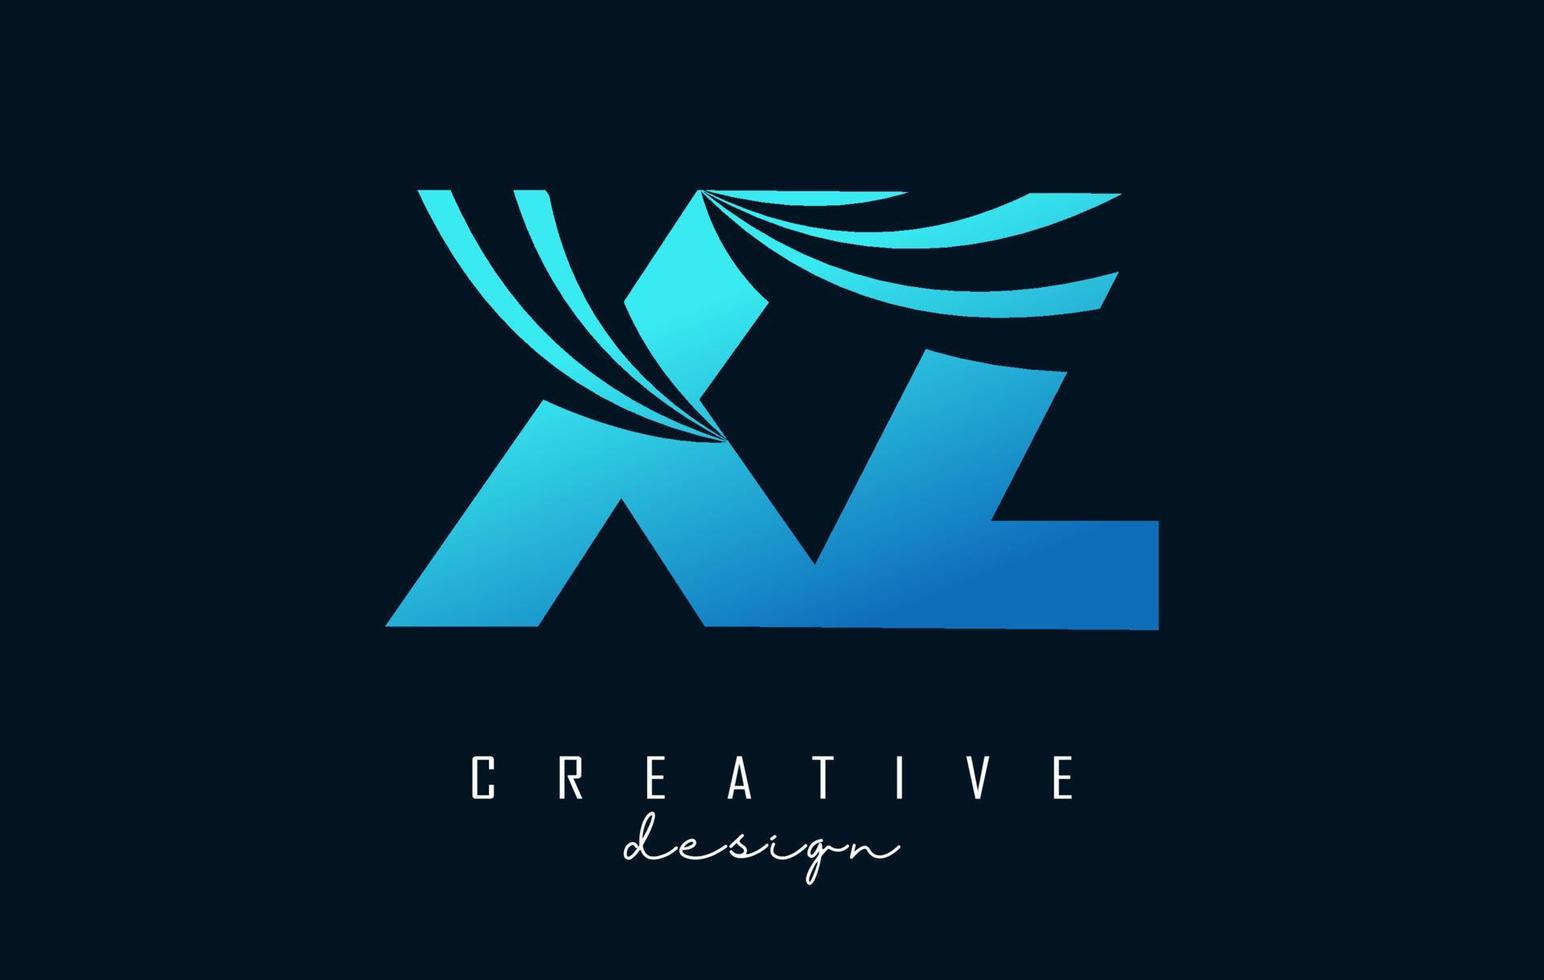 kreative blaue buchstaben xz xz logo mit führenden linien und straßenkonzeptdesign. Buchstaben mit geometrischem Design. vektor